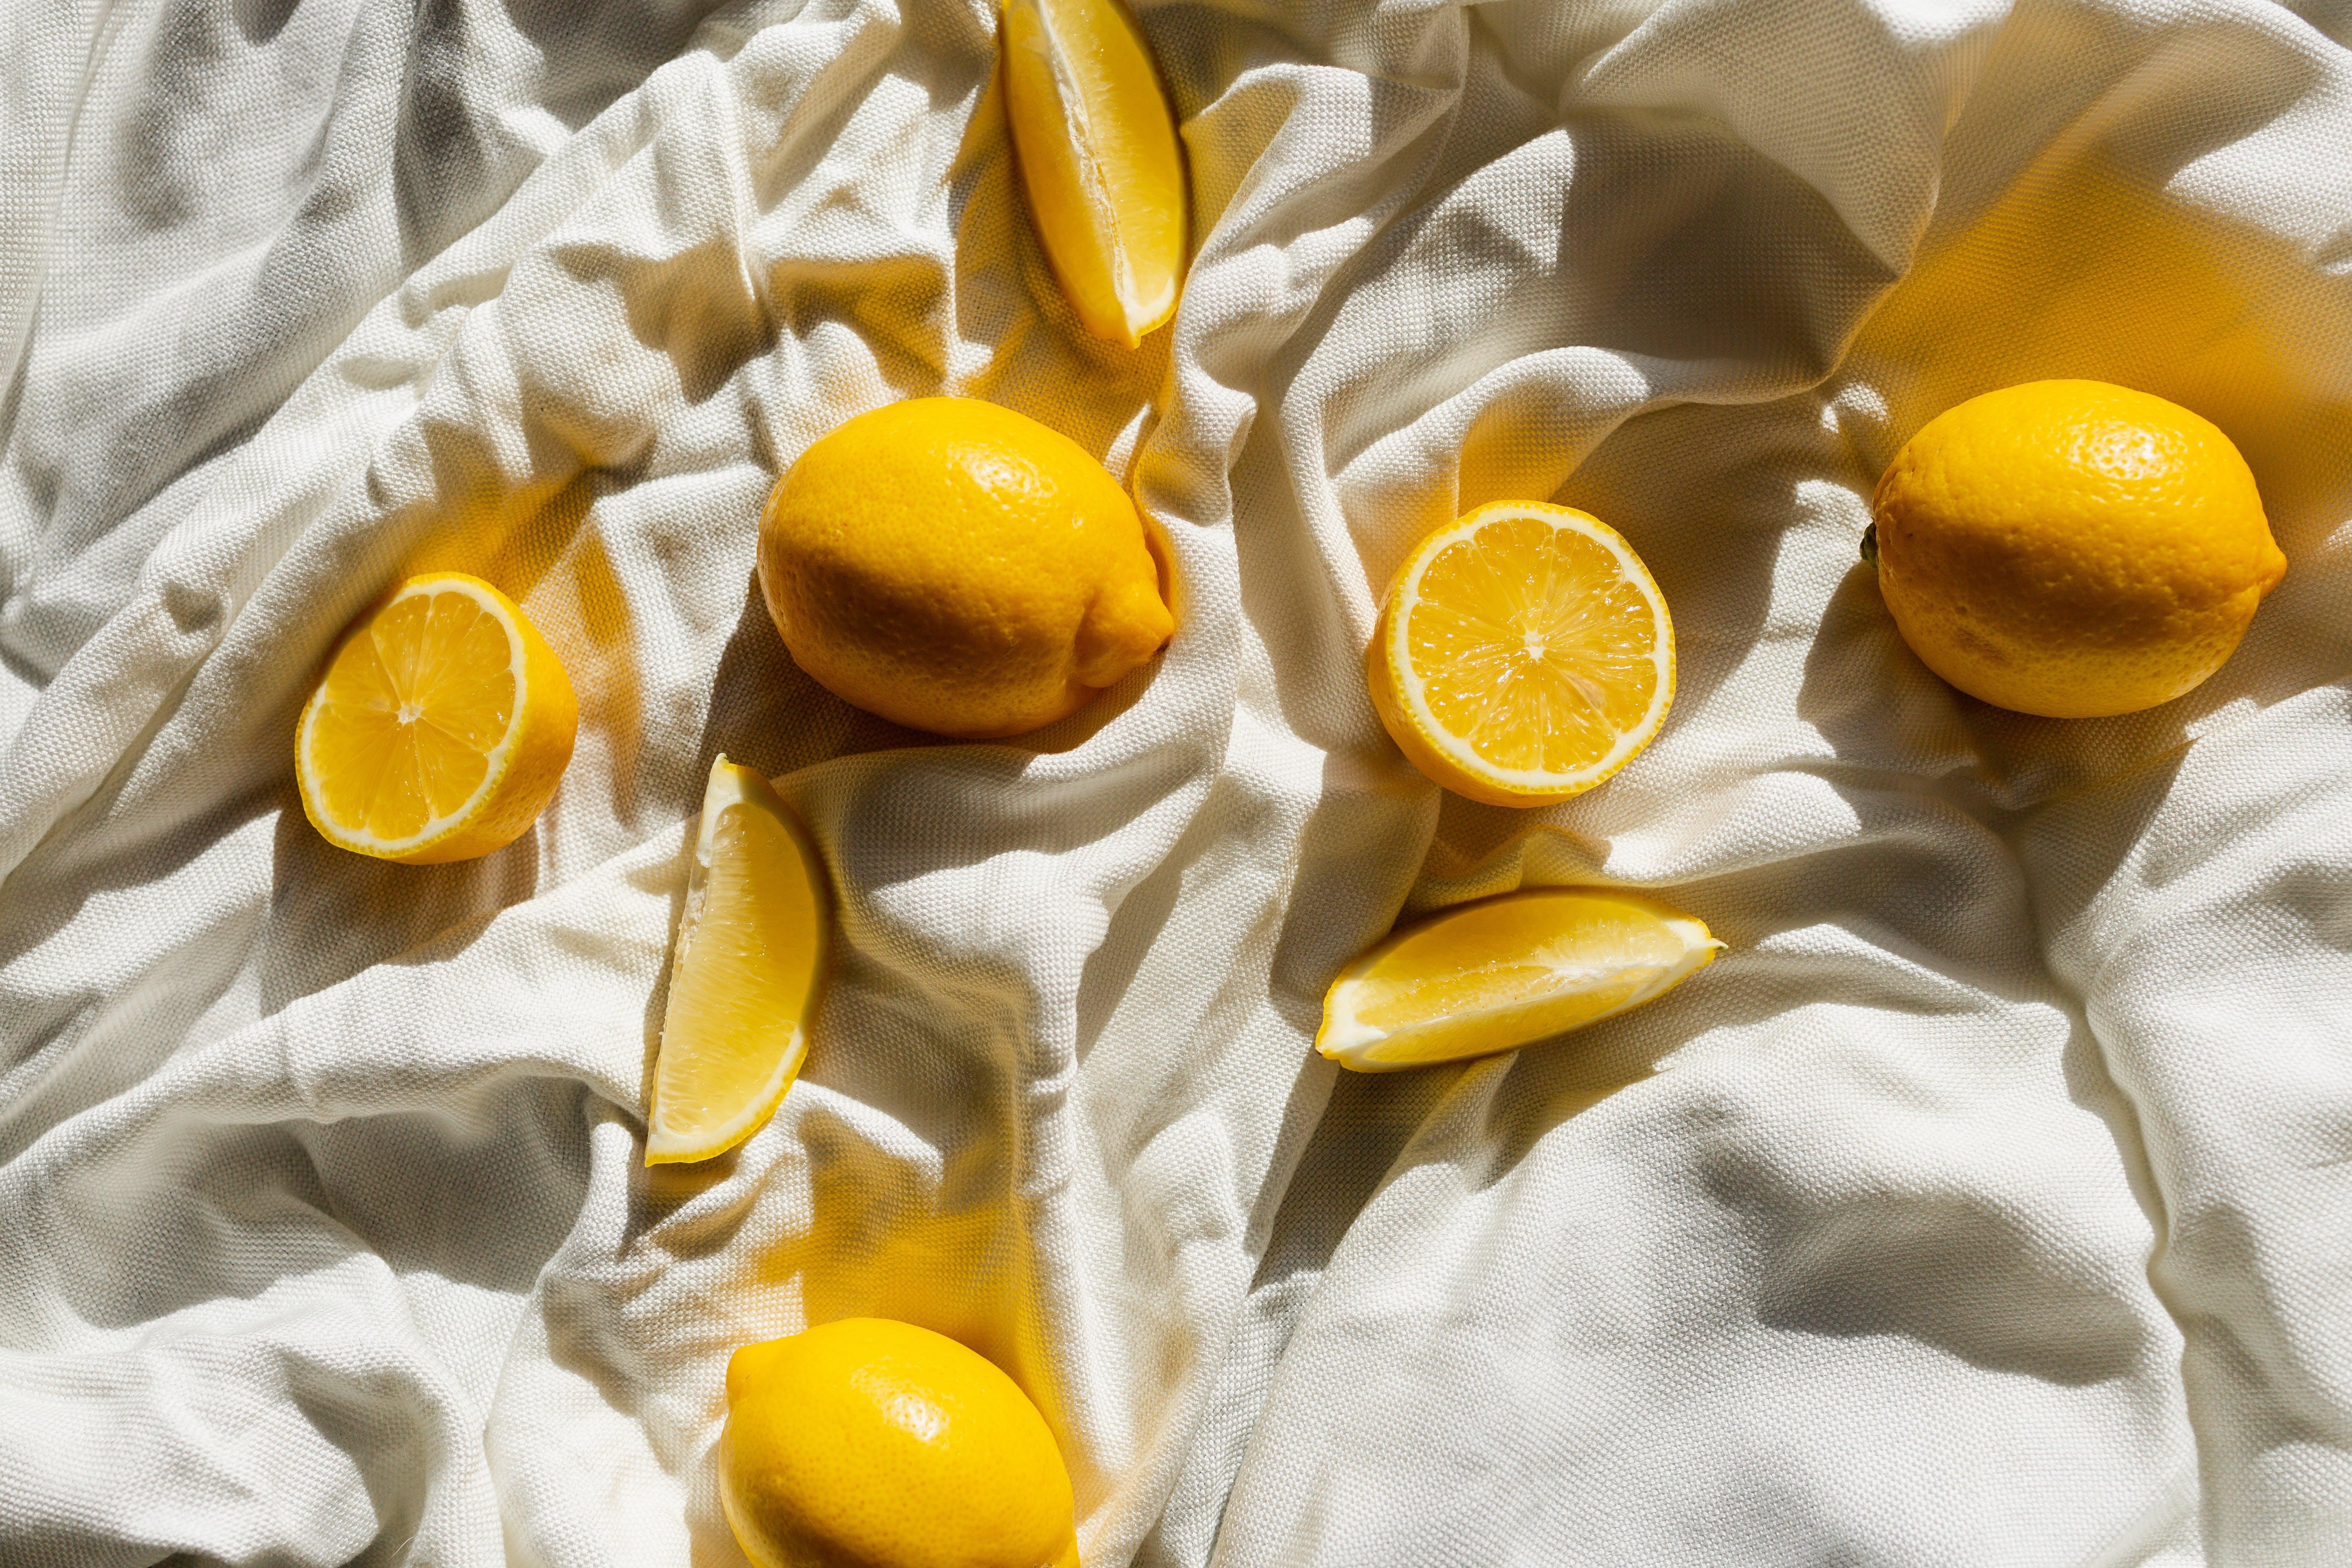 鮮黃色的檸檬散落在褶皺的白色帆布上，鮮黃與潔白，乾淨又有夏日感。鮮切的檸檬散溢著酸酸甜甜的清新香氣，一掃夏日的煩悶。